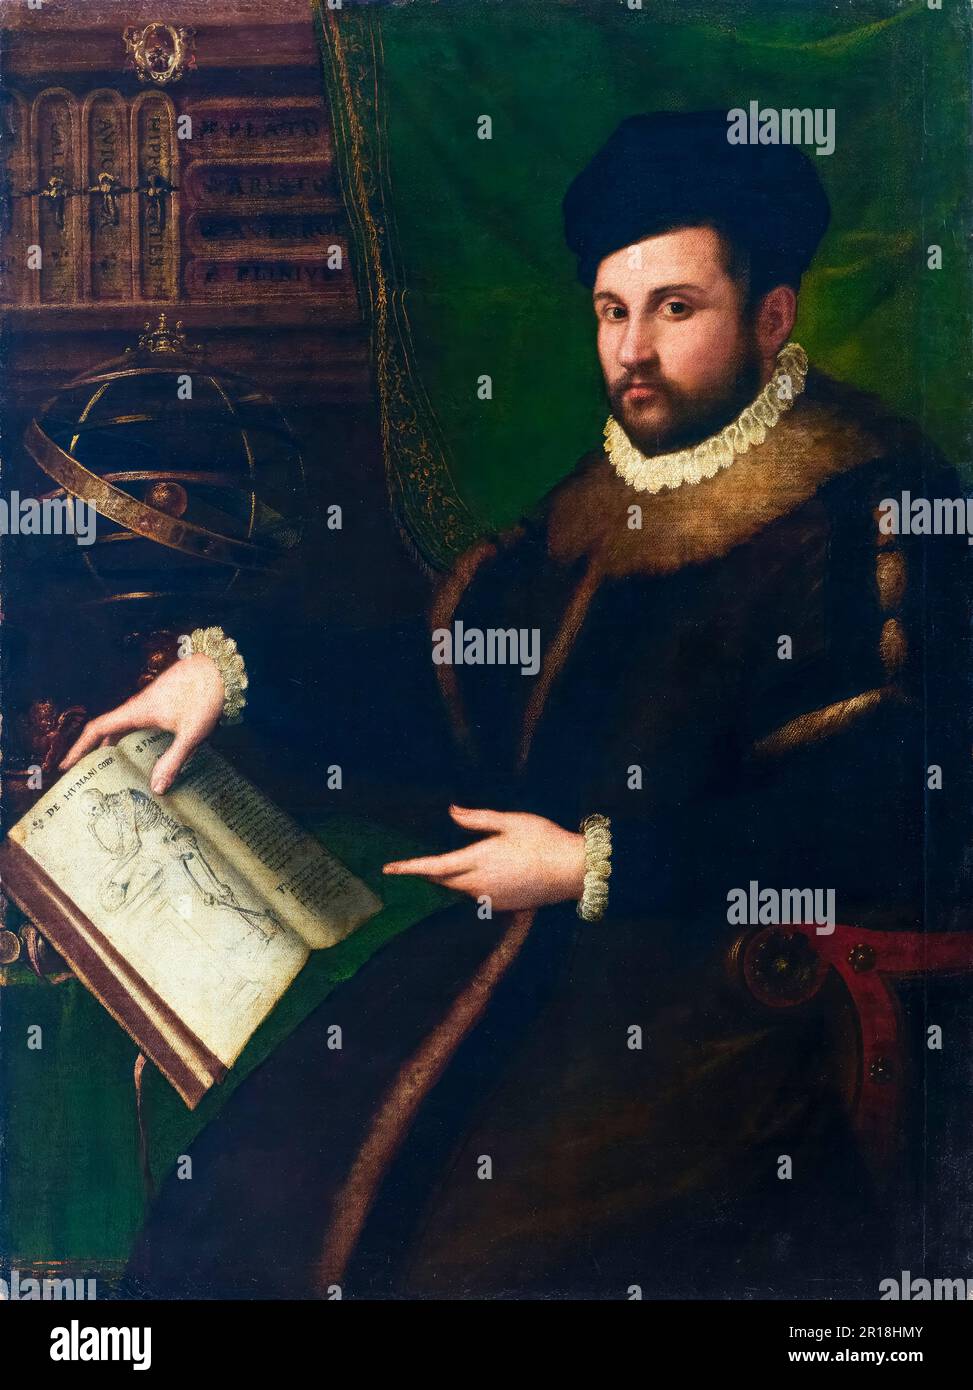 Girolamo Mercuriale (1530-1606), medico e studioso italiano, ritratto dipinto ad olio su tela di Lavinia Fontana, 1588-1589 Foto Stock